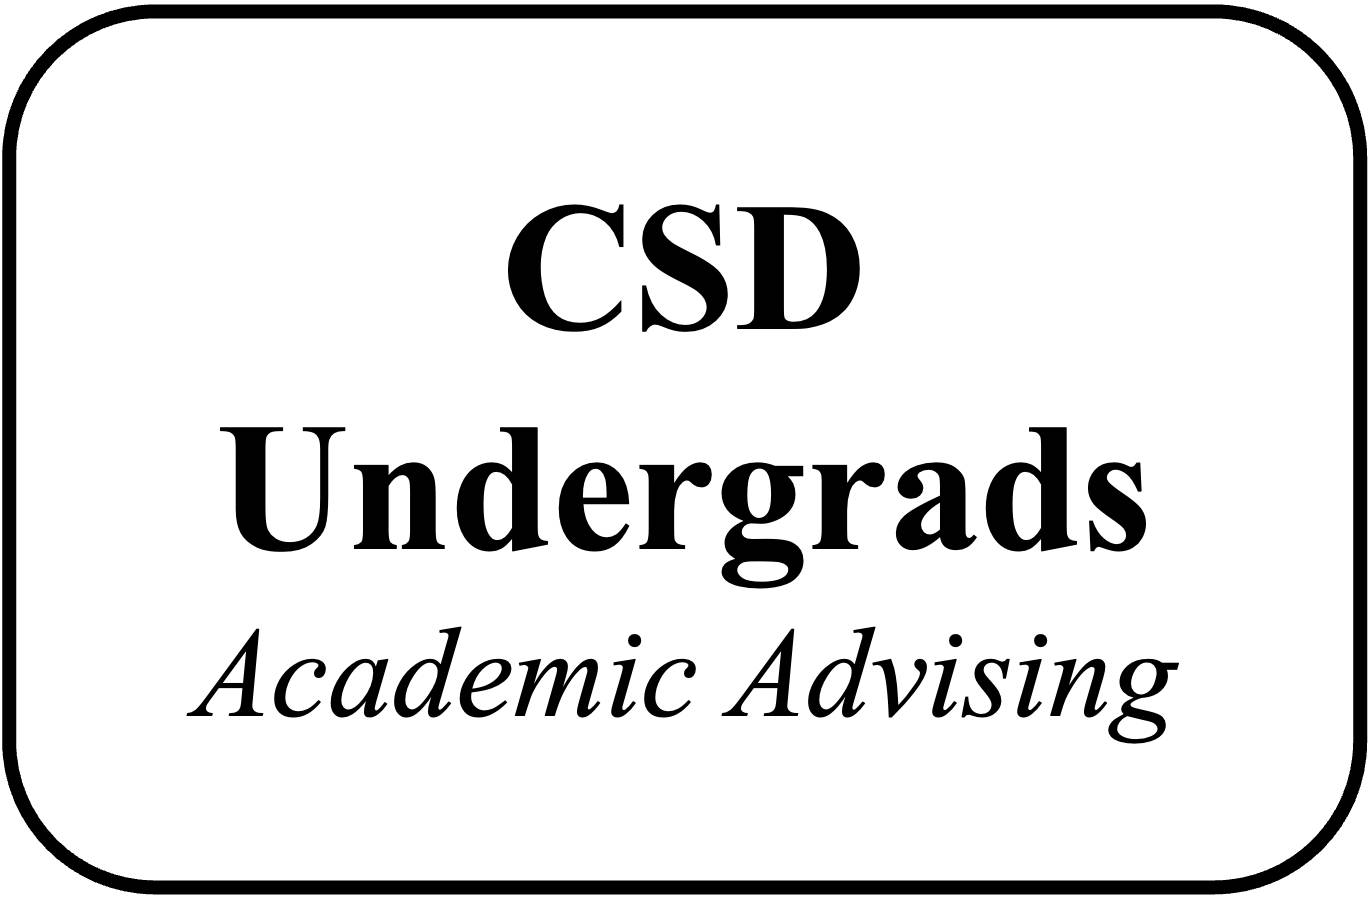 CSD Undergraduate Academic Advising